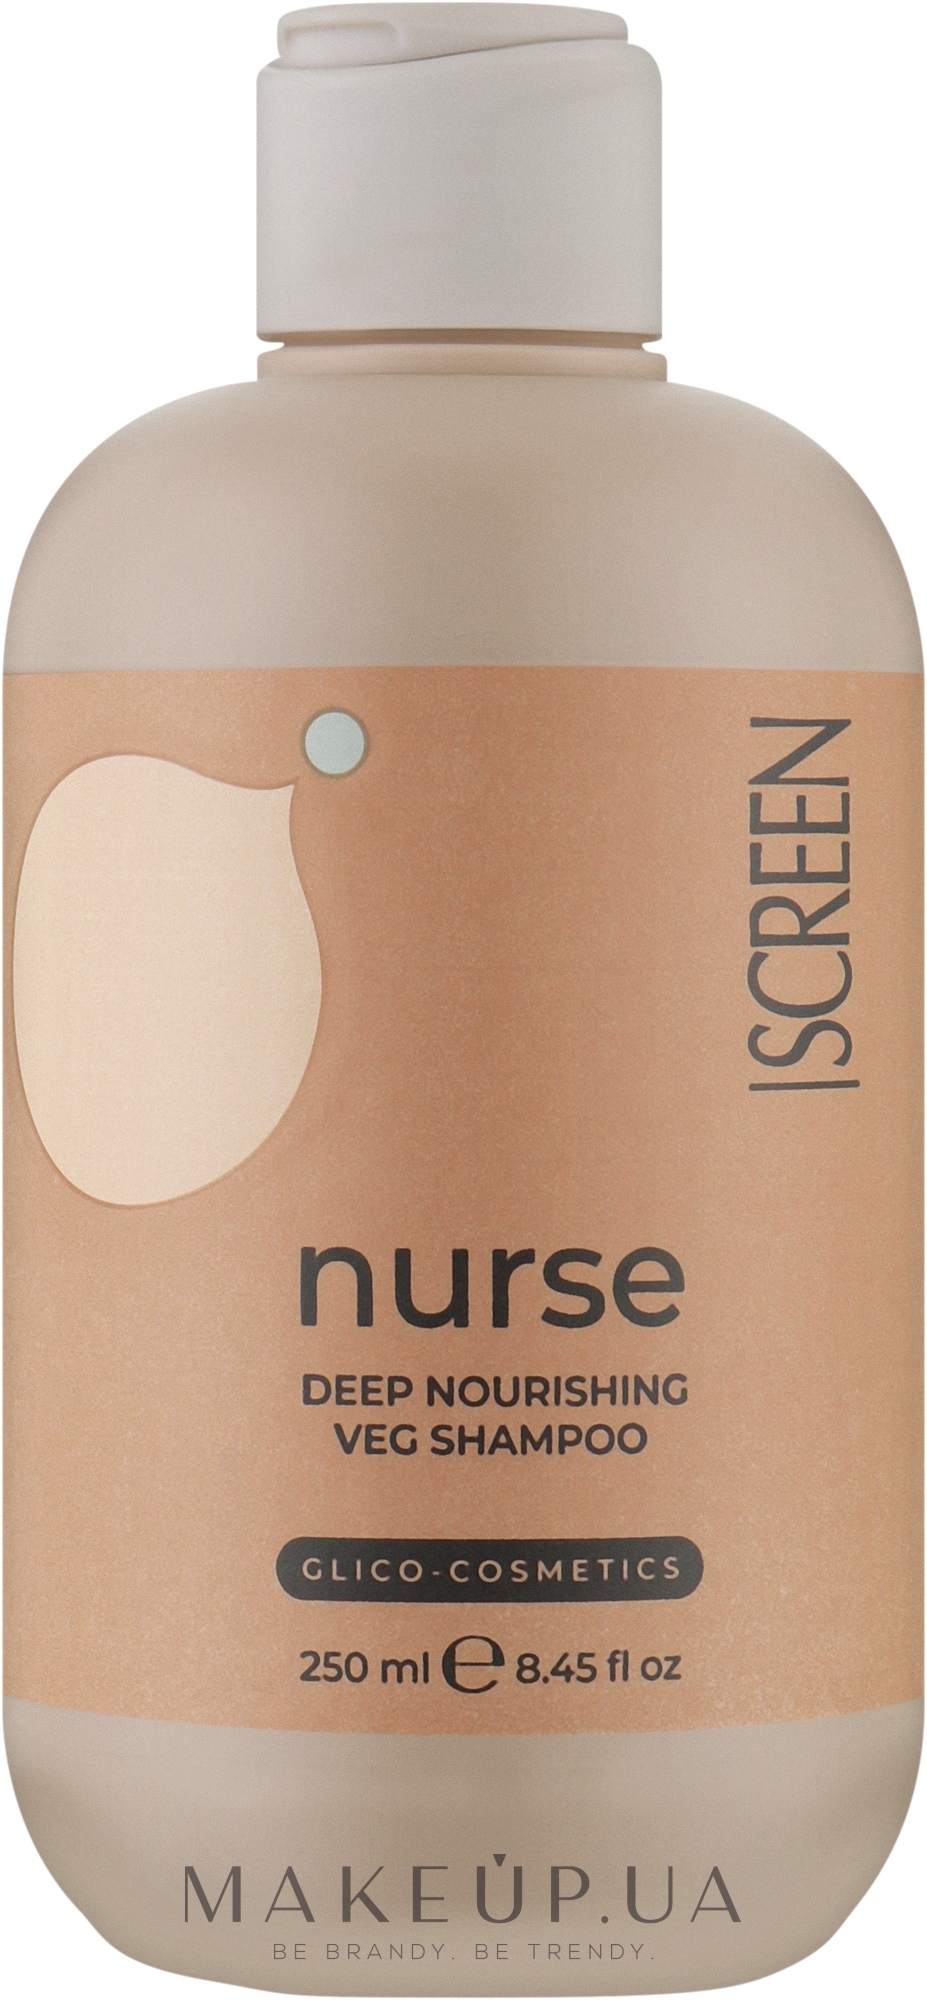 Шампунь для глубокого питания волос - Screen Purest Nurse Deep Nourishing Veg Shampoo — фото 250ml